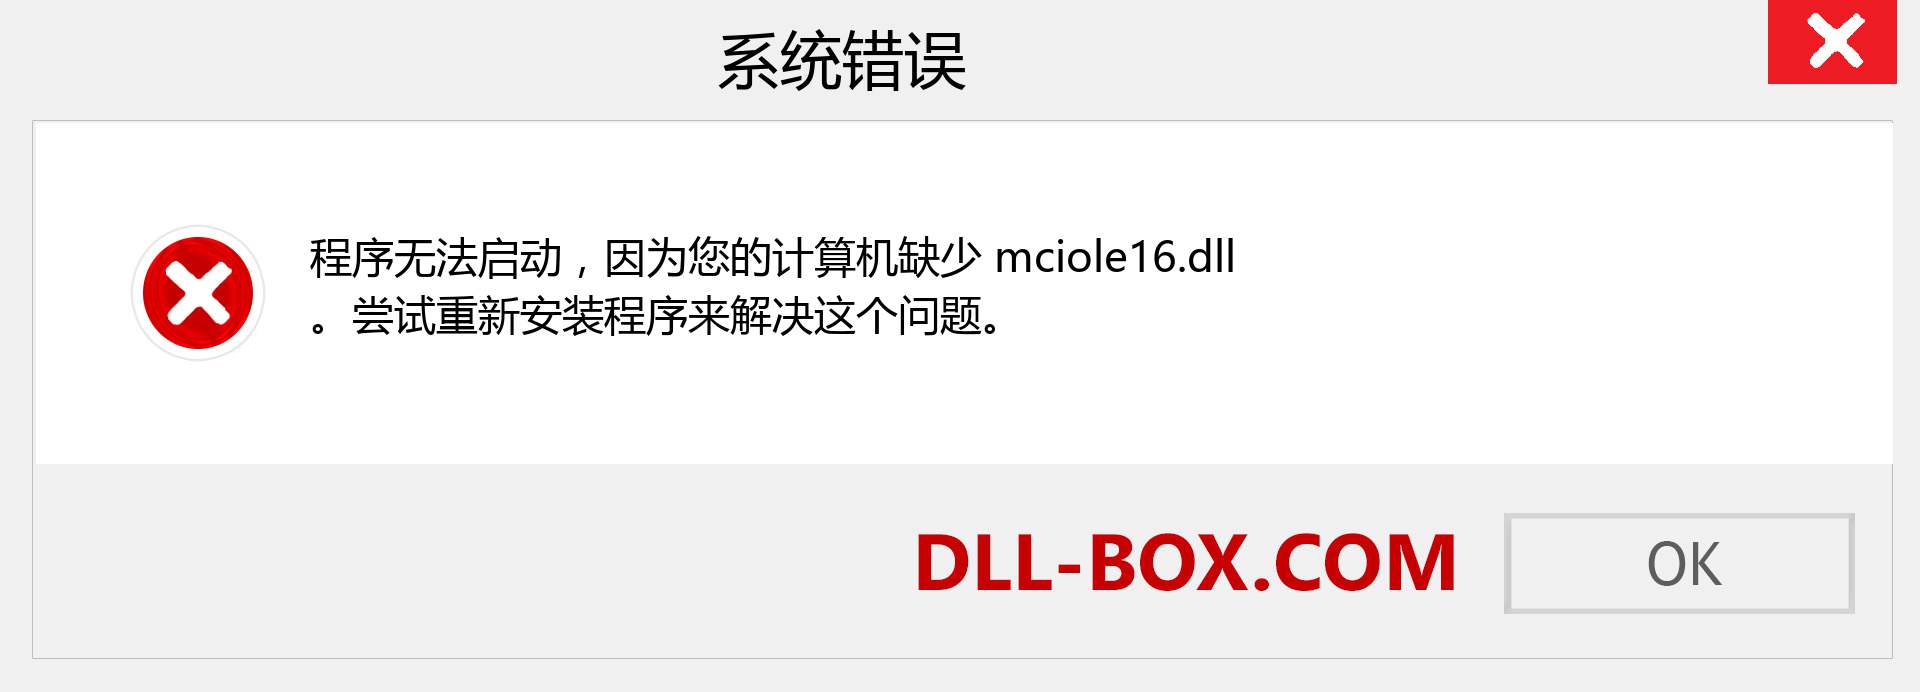 mciole16.dll 文件丢失？。 适用于 Windows 7、8、10 的下载 - 修复 Windows、照片、图像上的 mciole16 dll 丢失错误